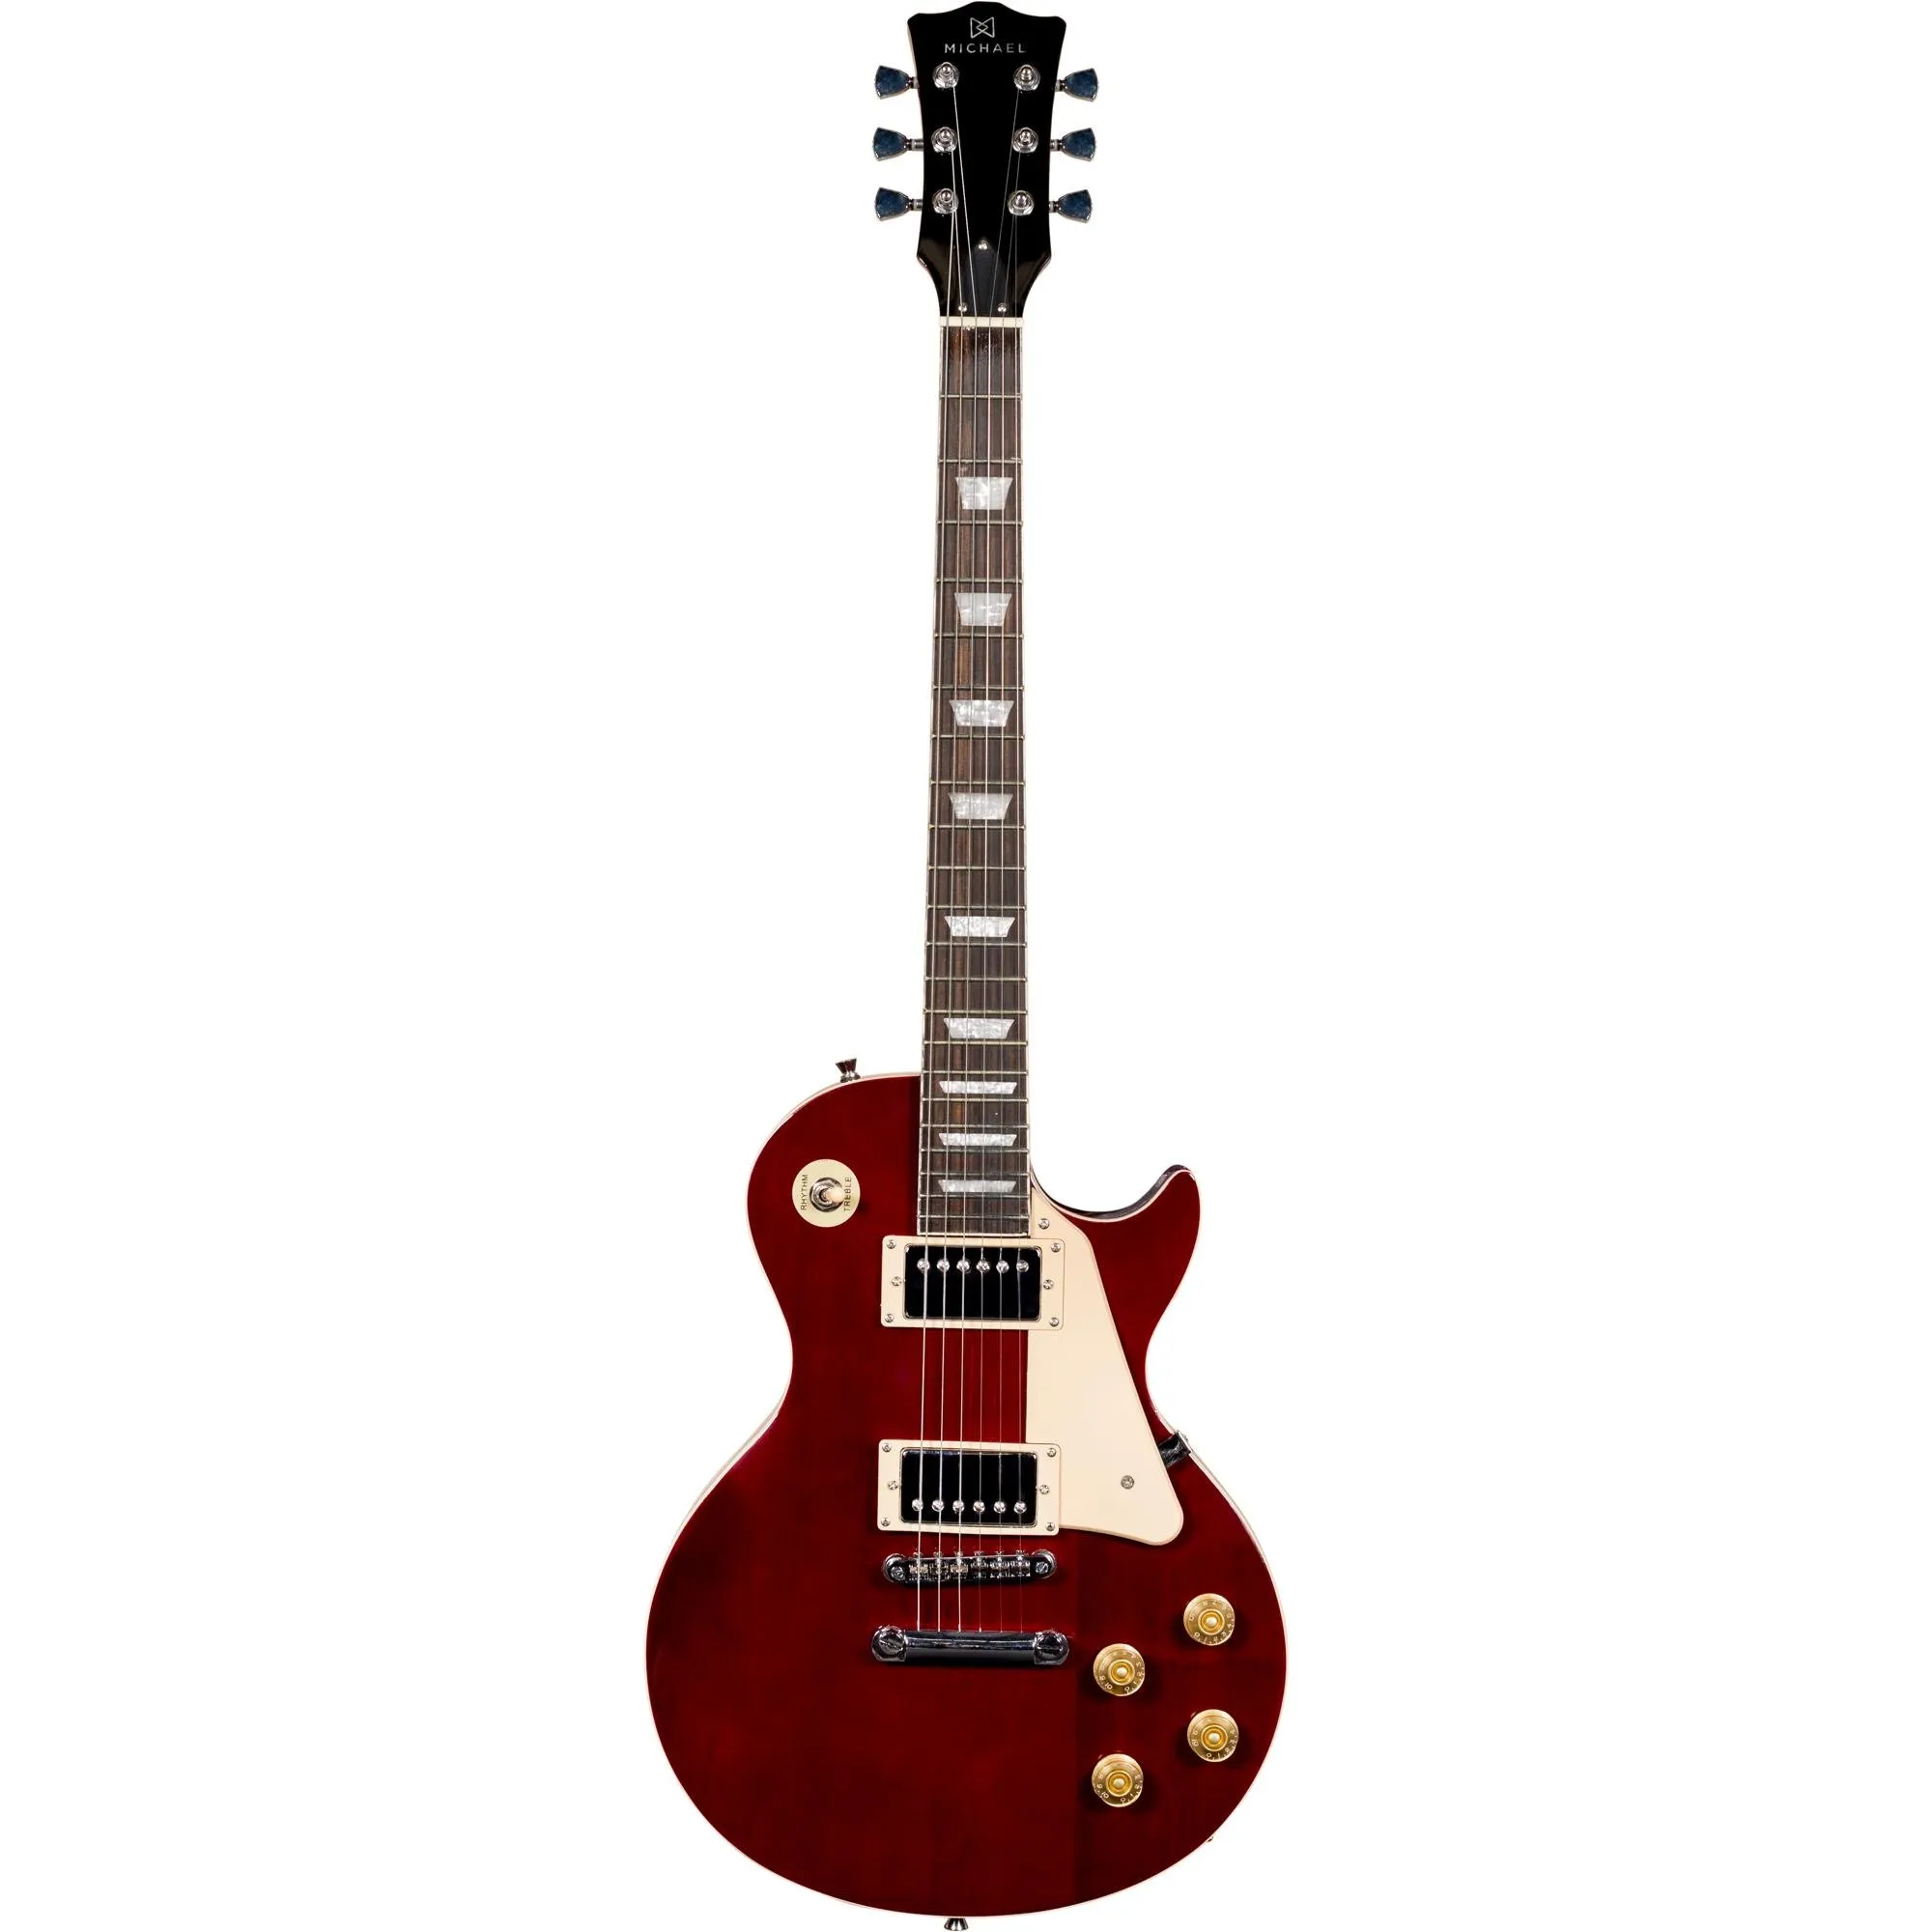 Guitarra Michael Les Paul GM730N Wine Red por 1.499,99 à vista no boleto/pix ou parcele em até 12x sem juros. Compre na loja Mundomax!